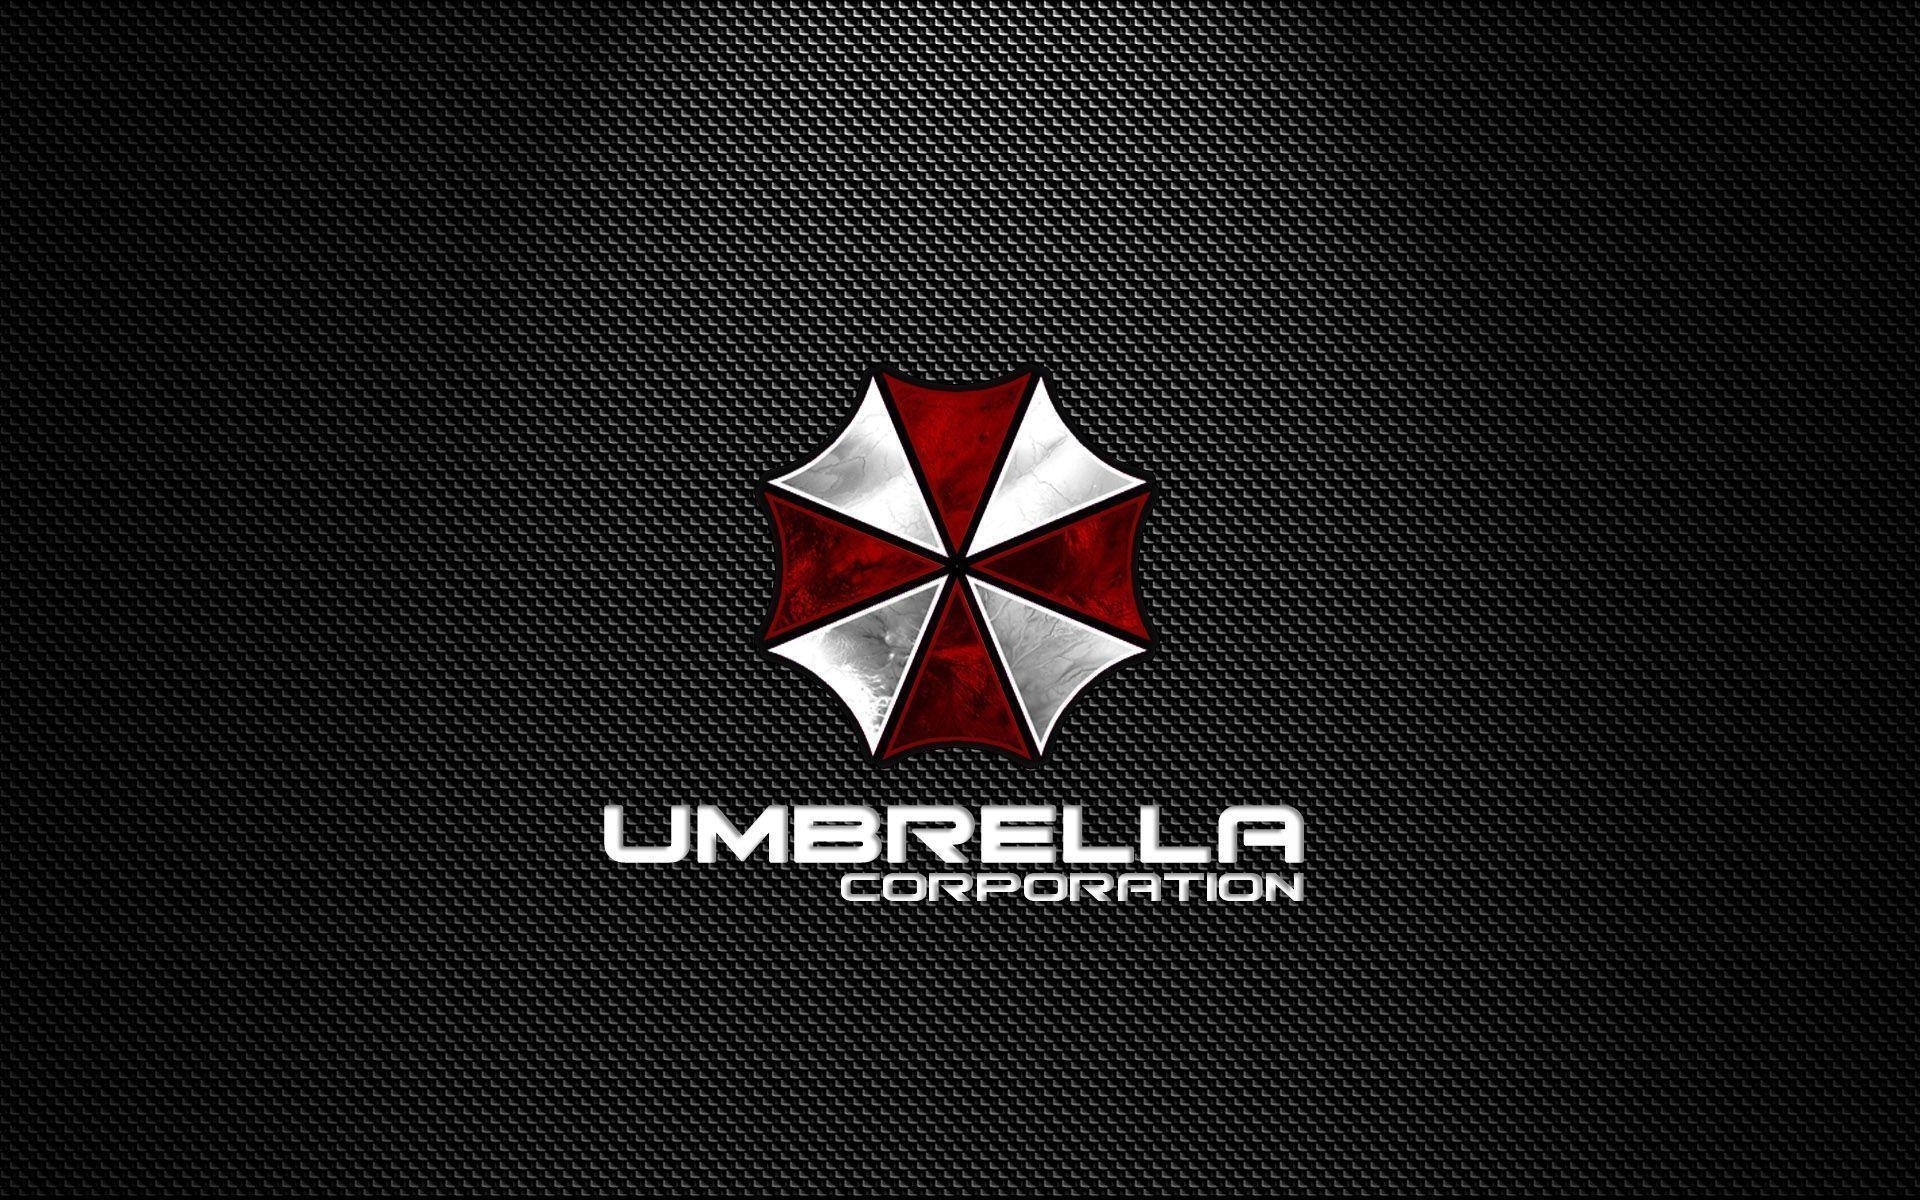 umbrella corporation backgrounds - wallpaper cave